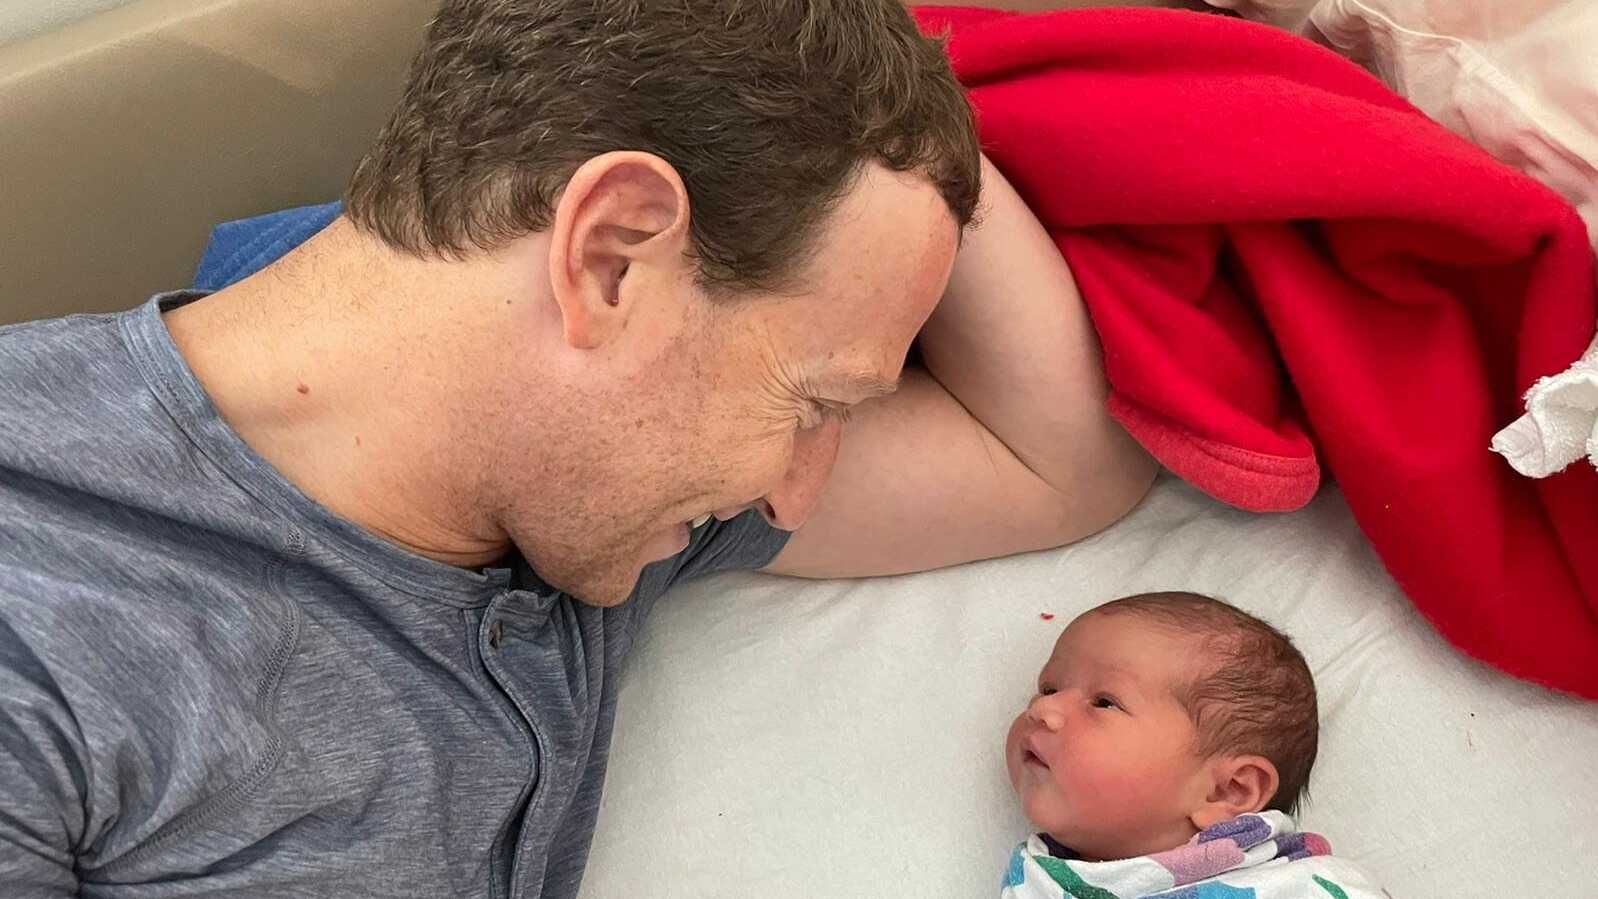 Марк Цукерберг став батьком втретє - фото, стать, ім'я дитини